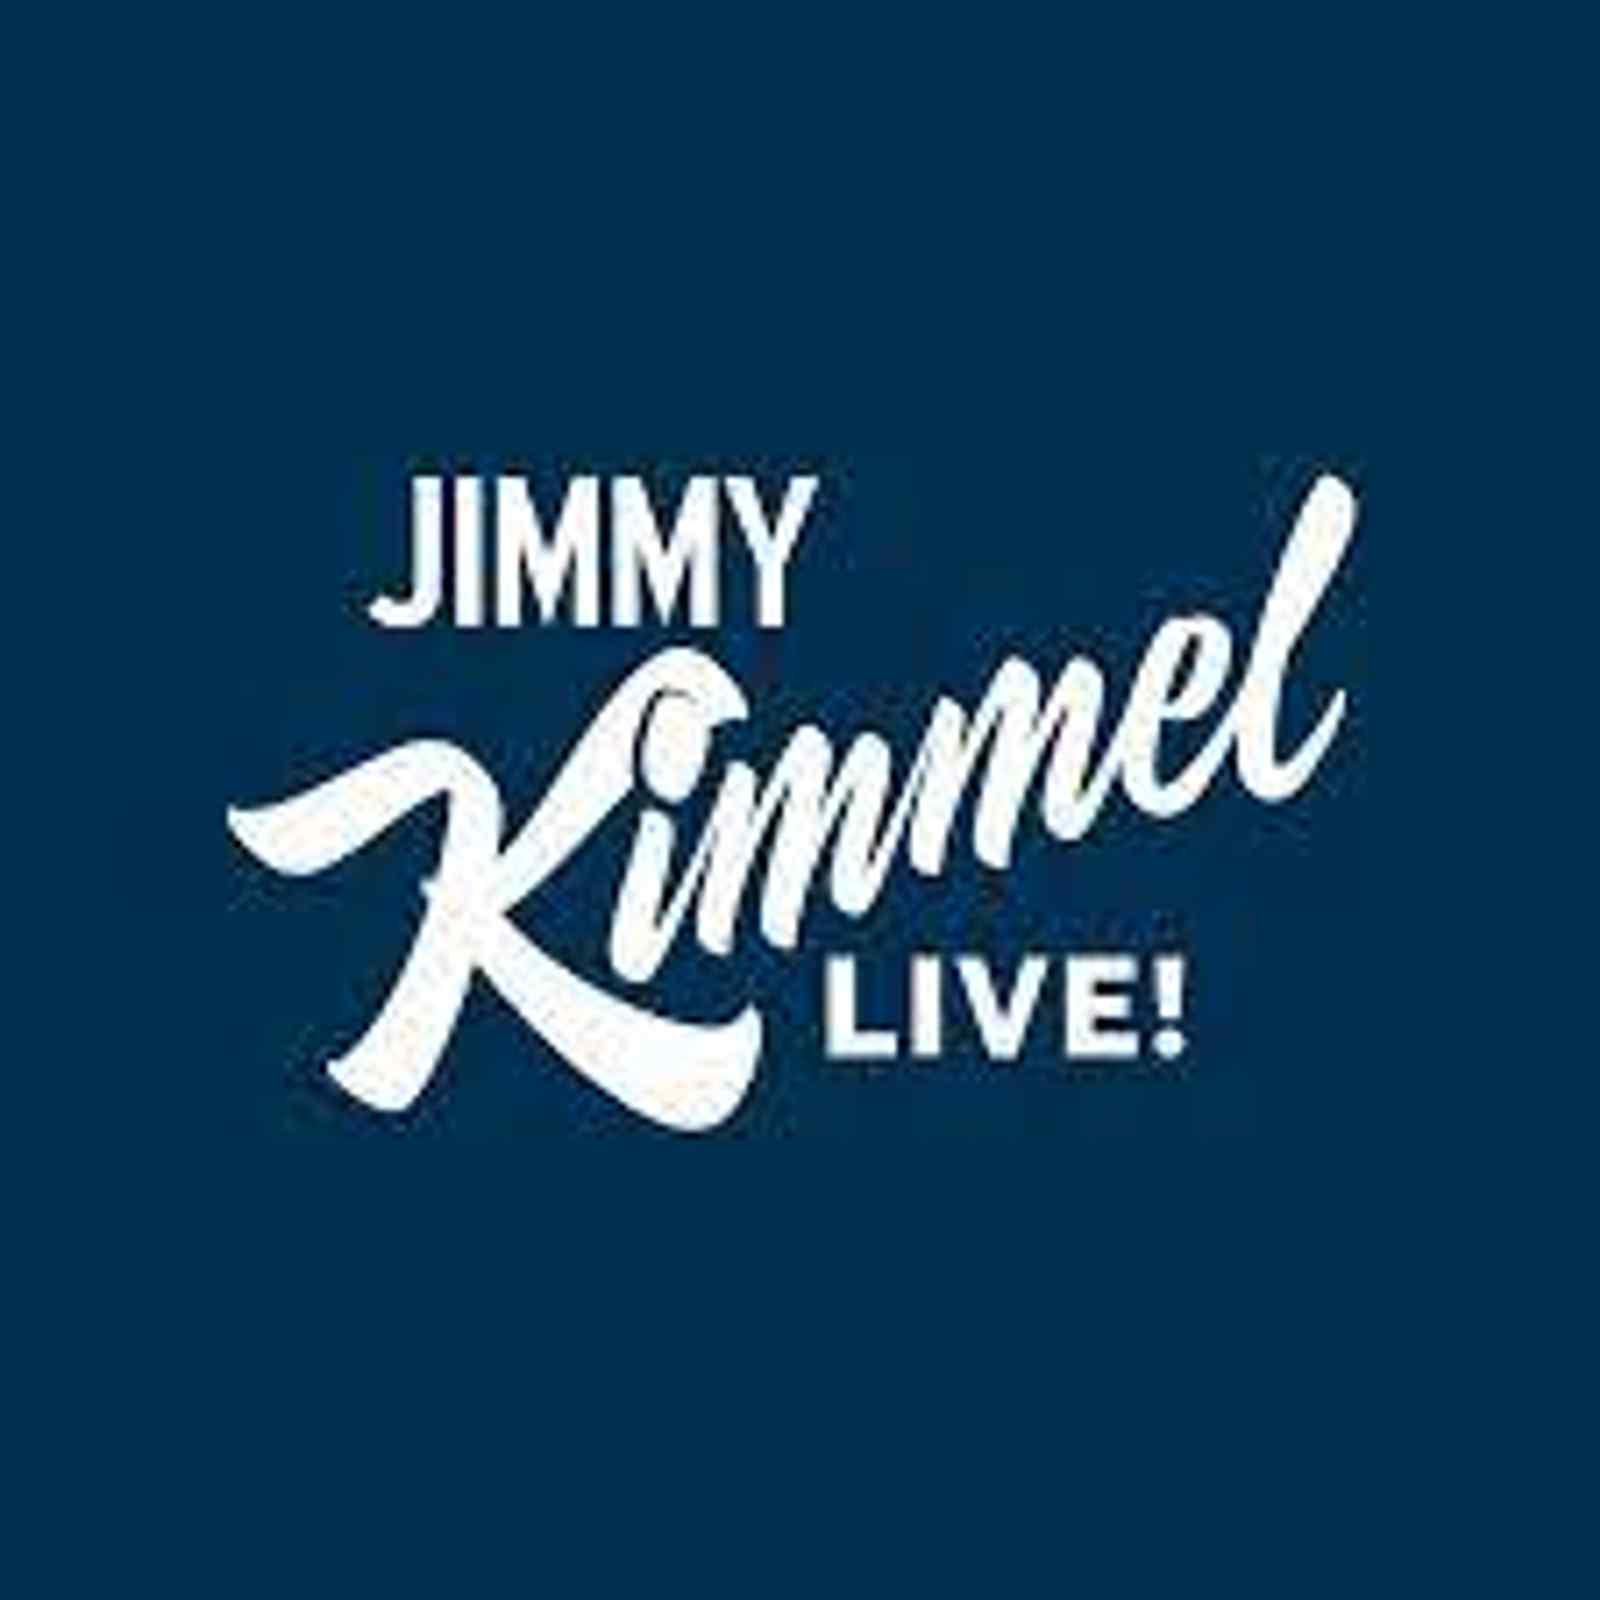 Jimmy Kimmel Live!: Kane Brown